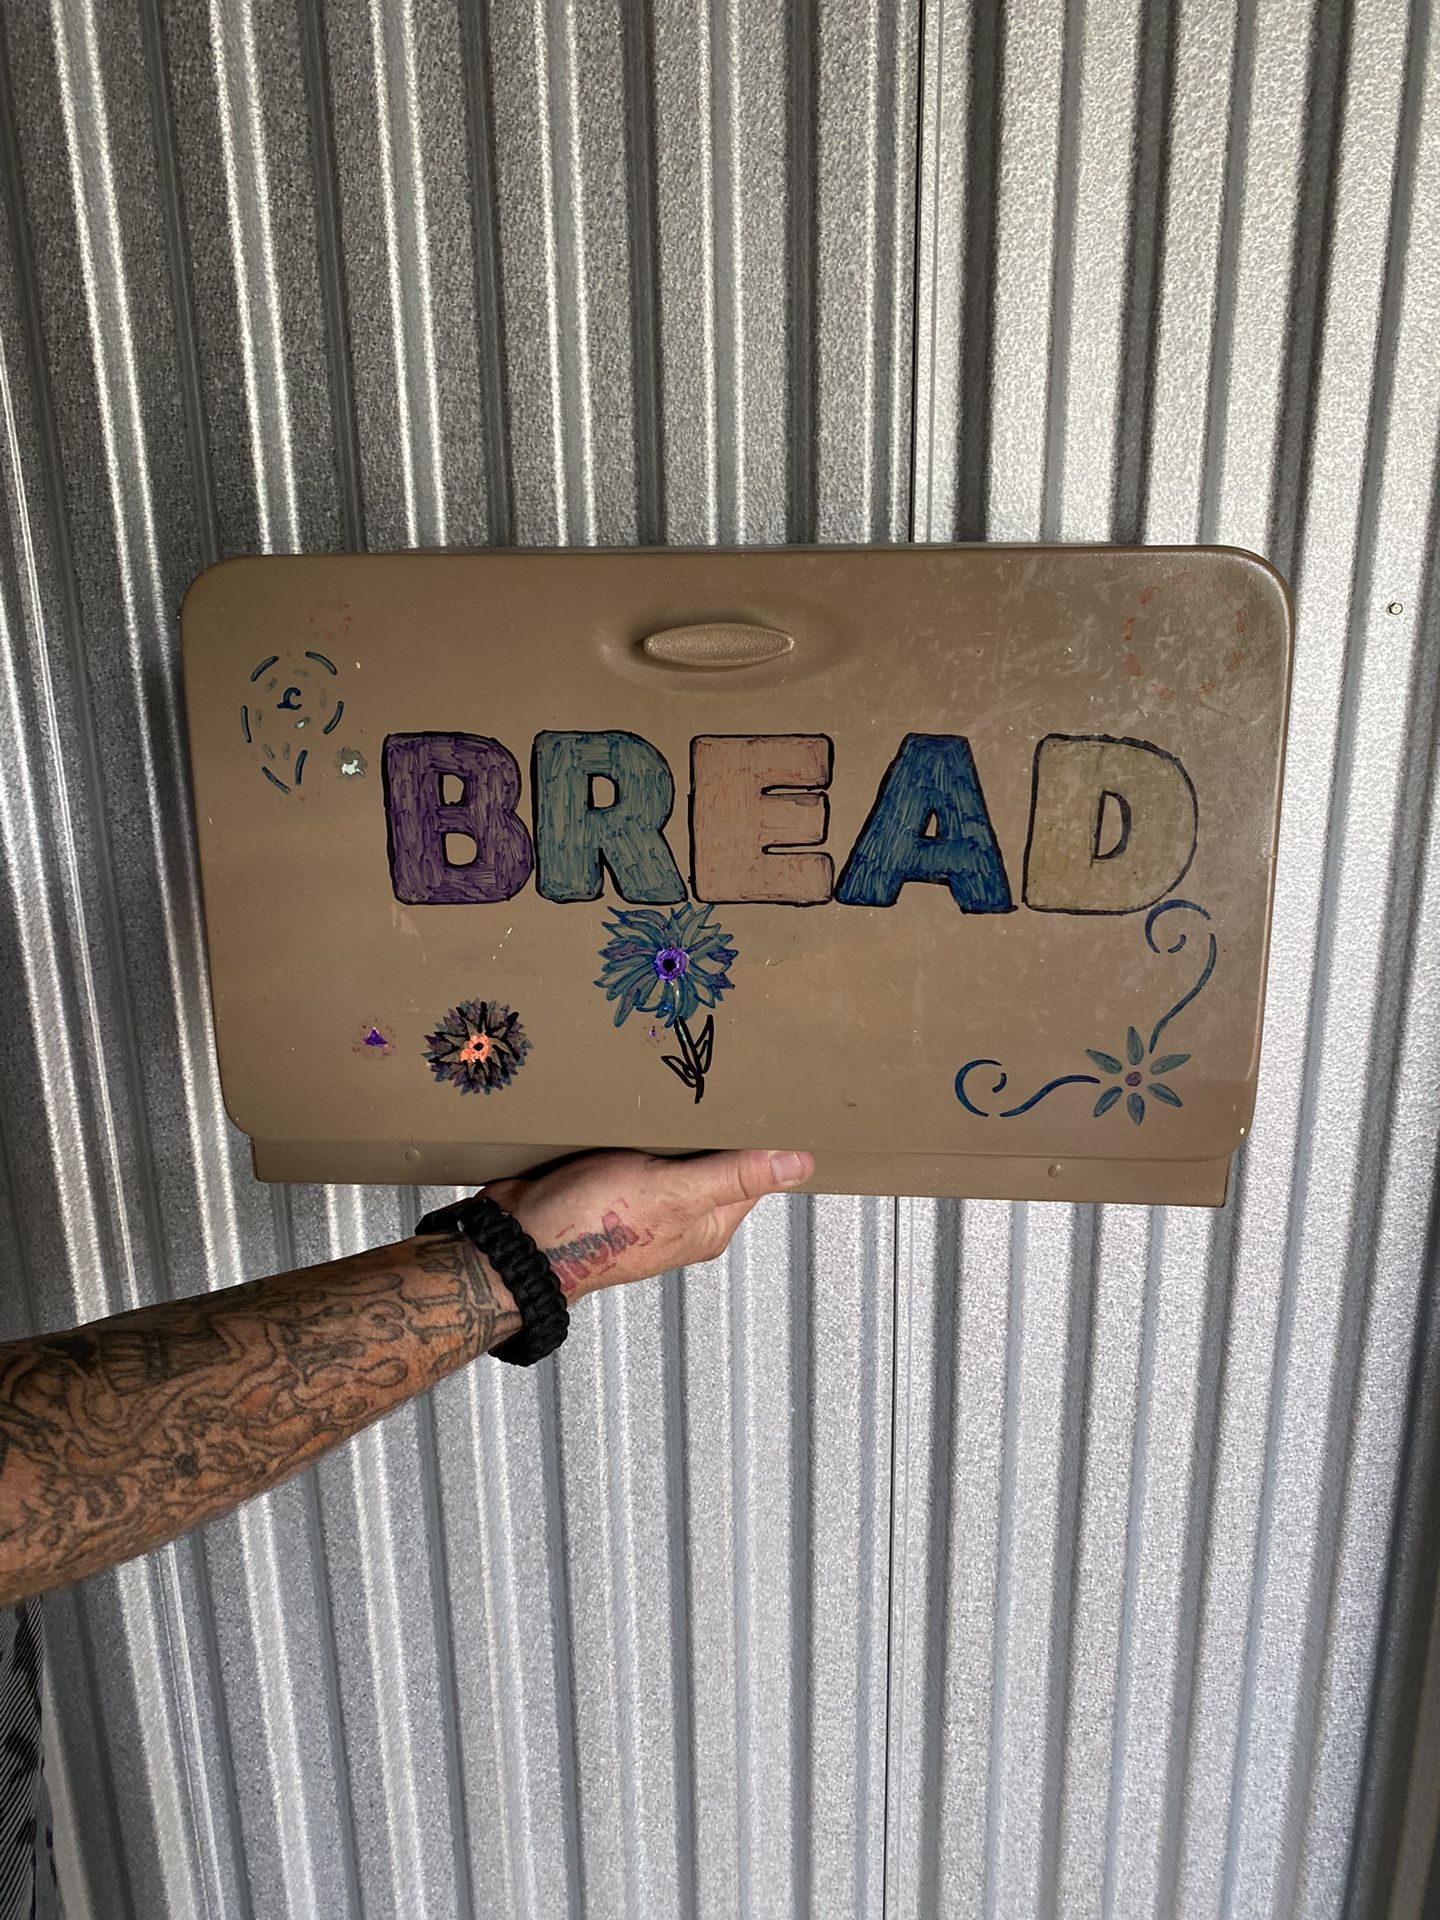 Old Bread Box